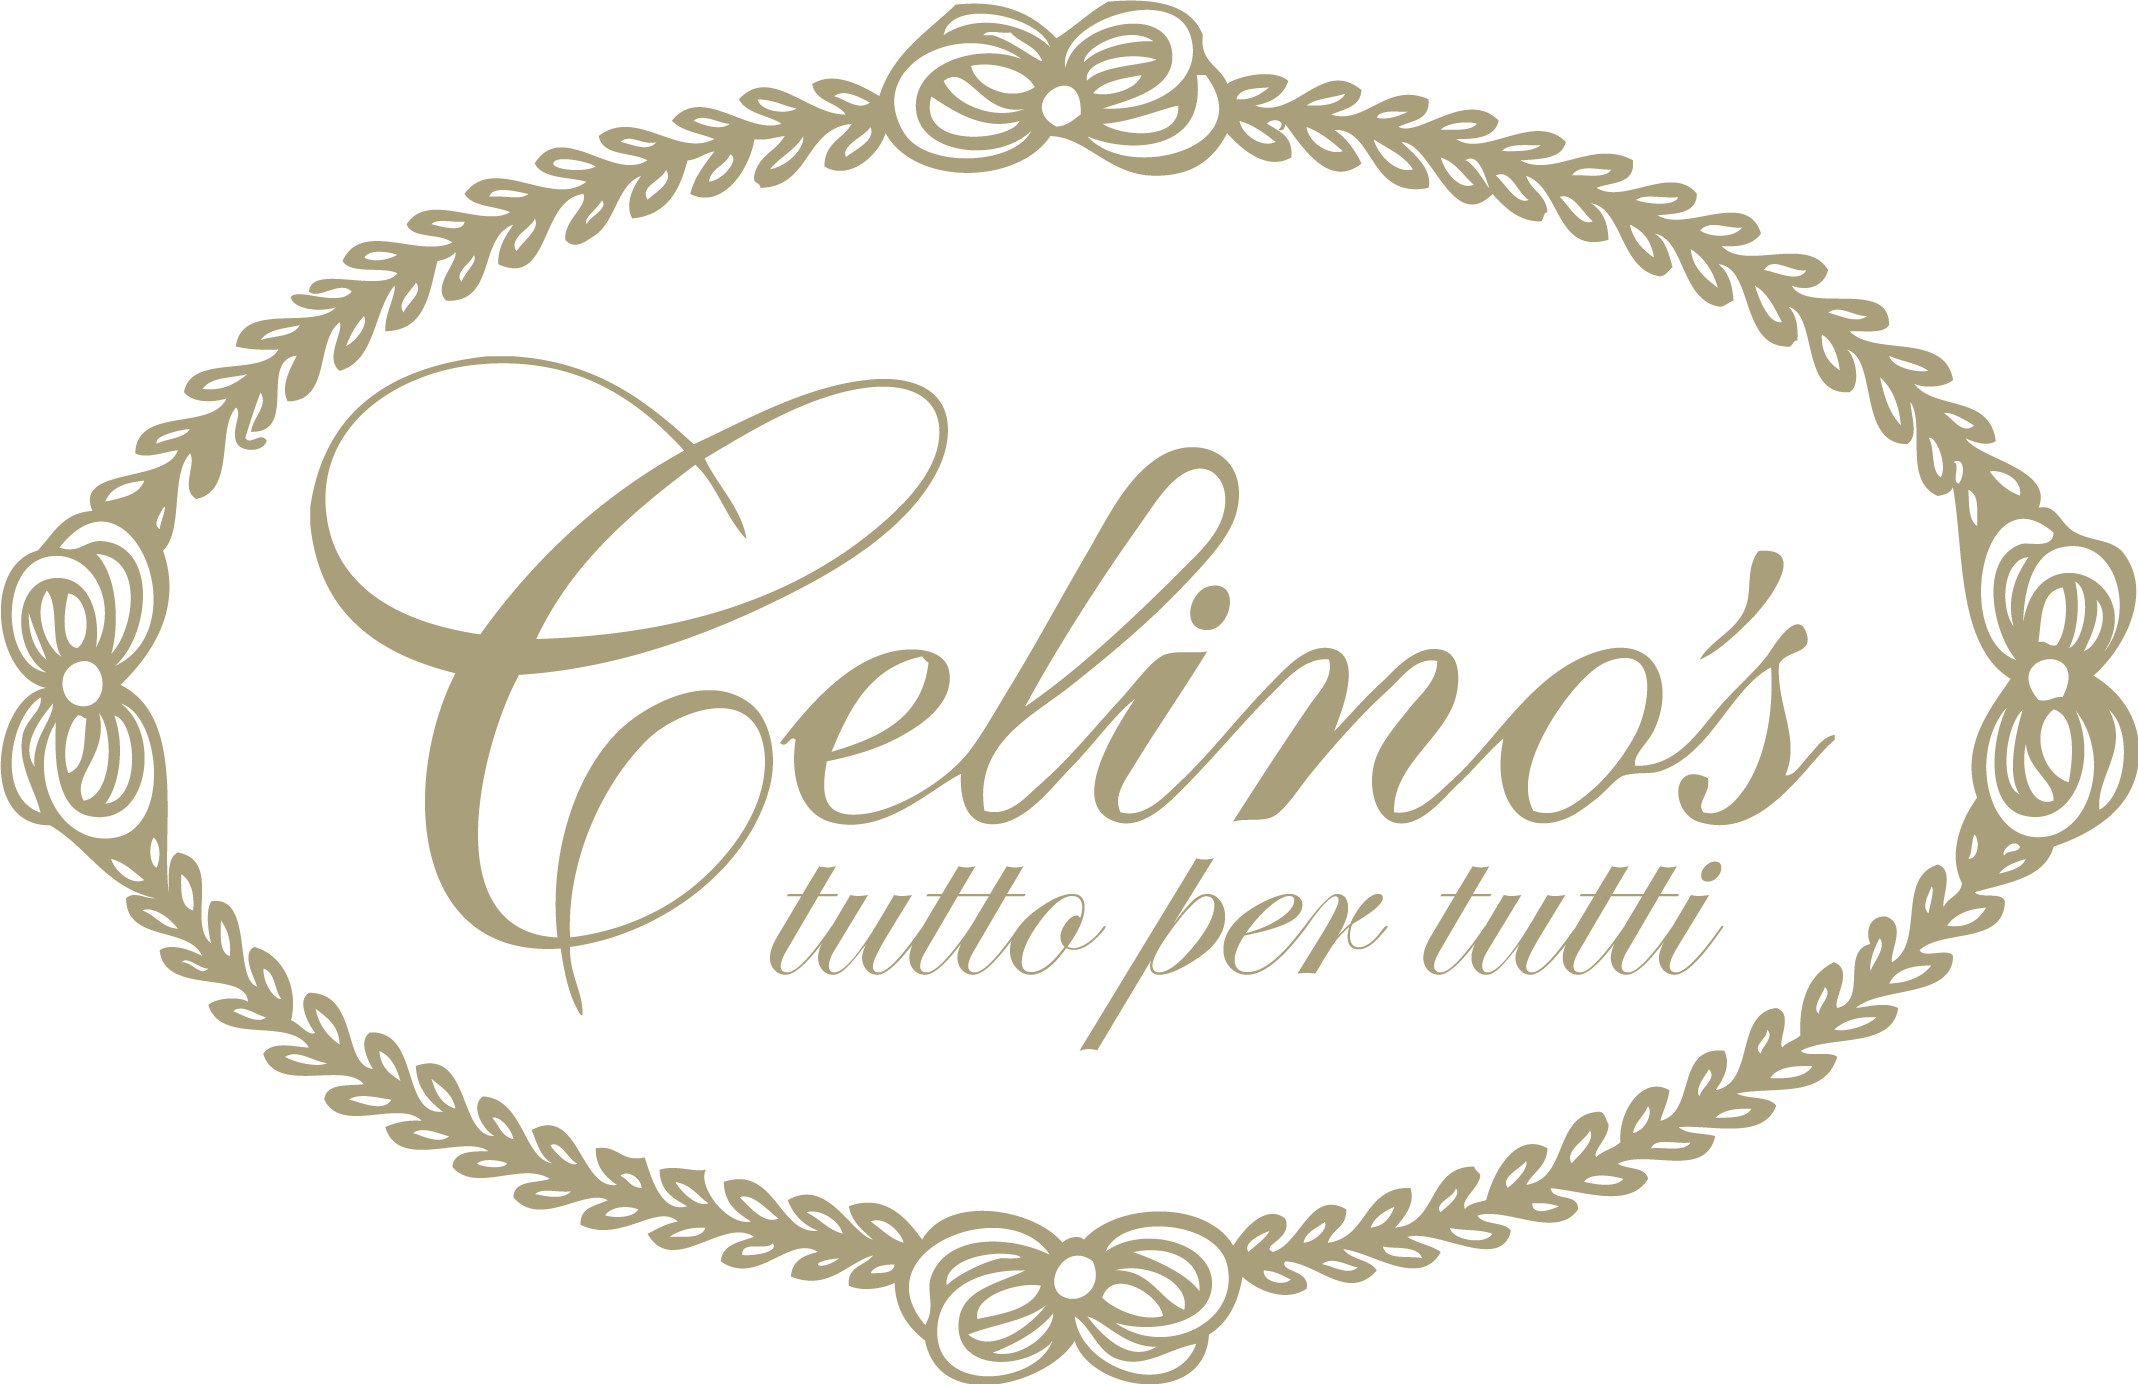 Celino's